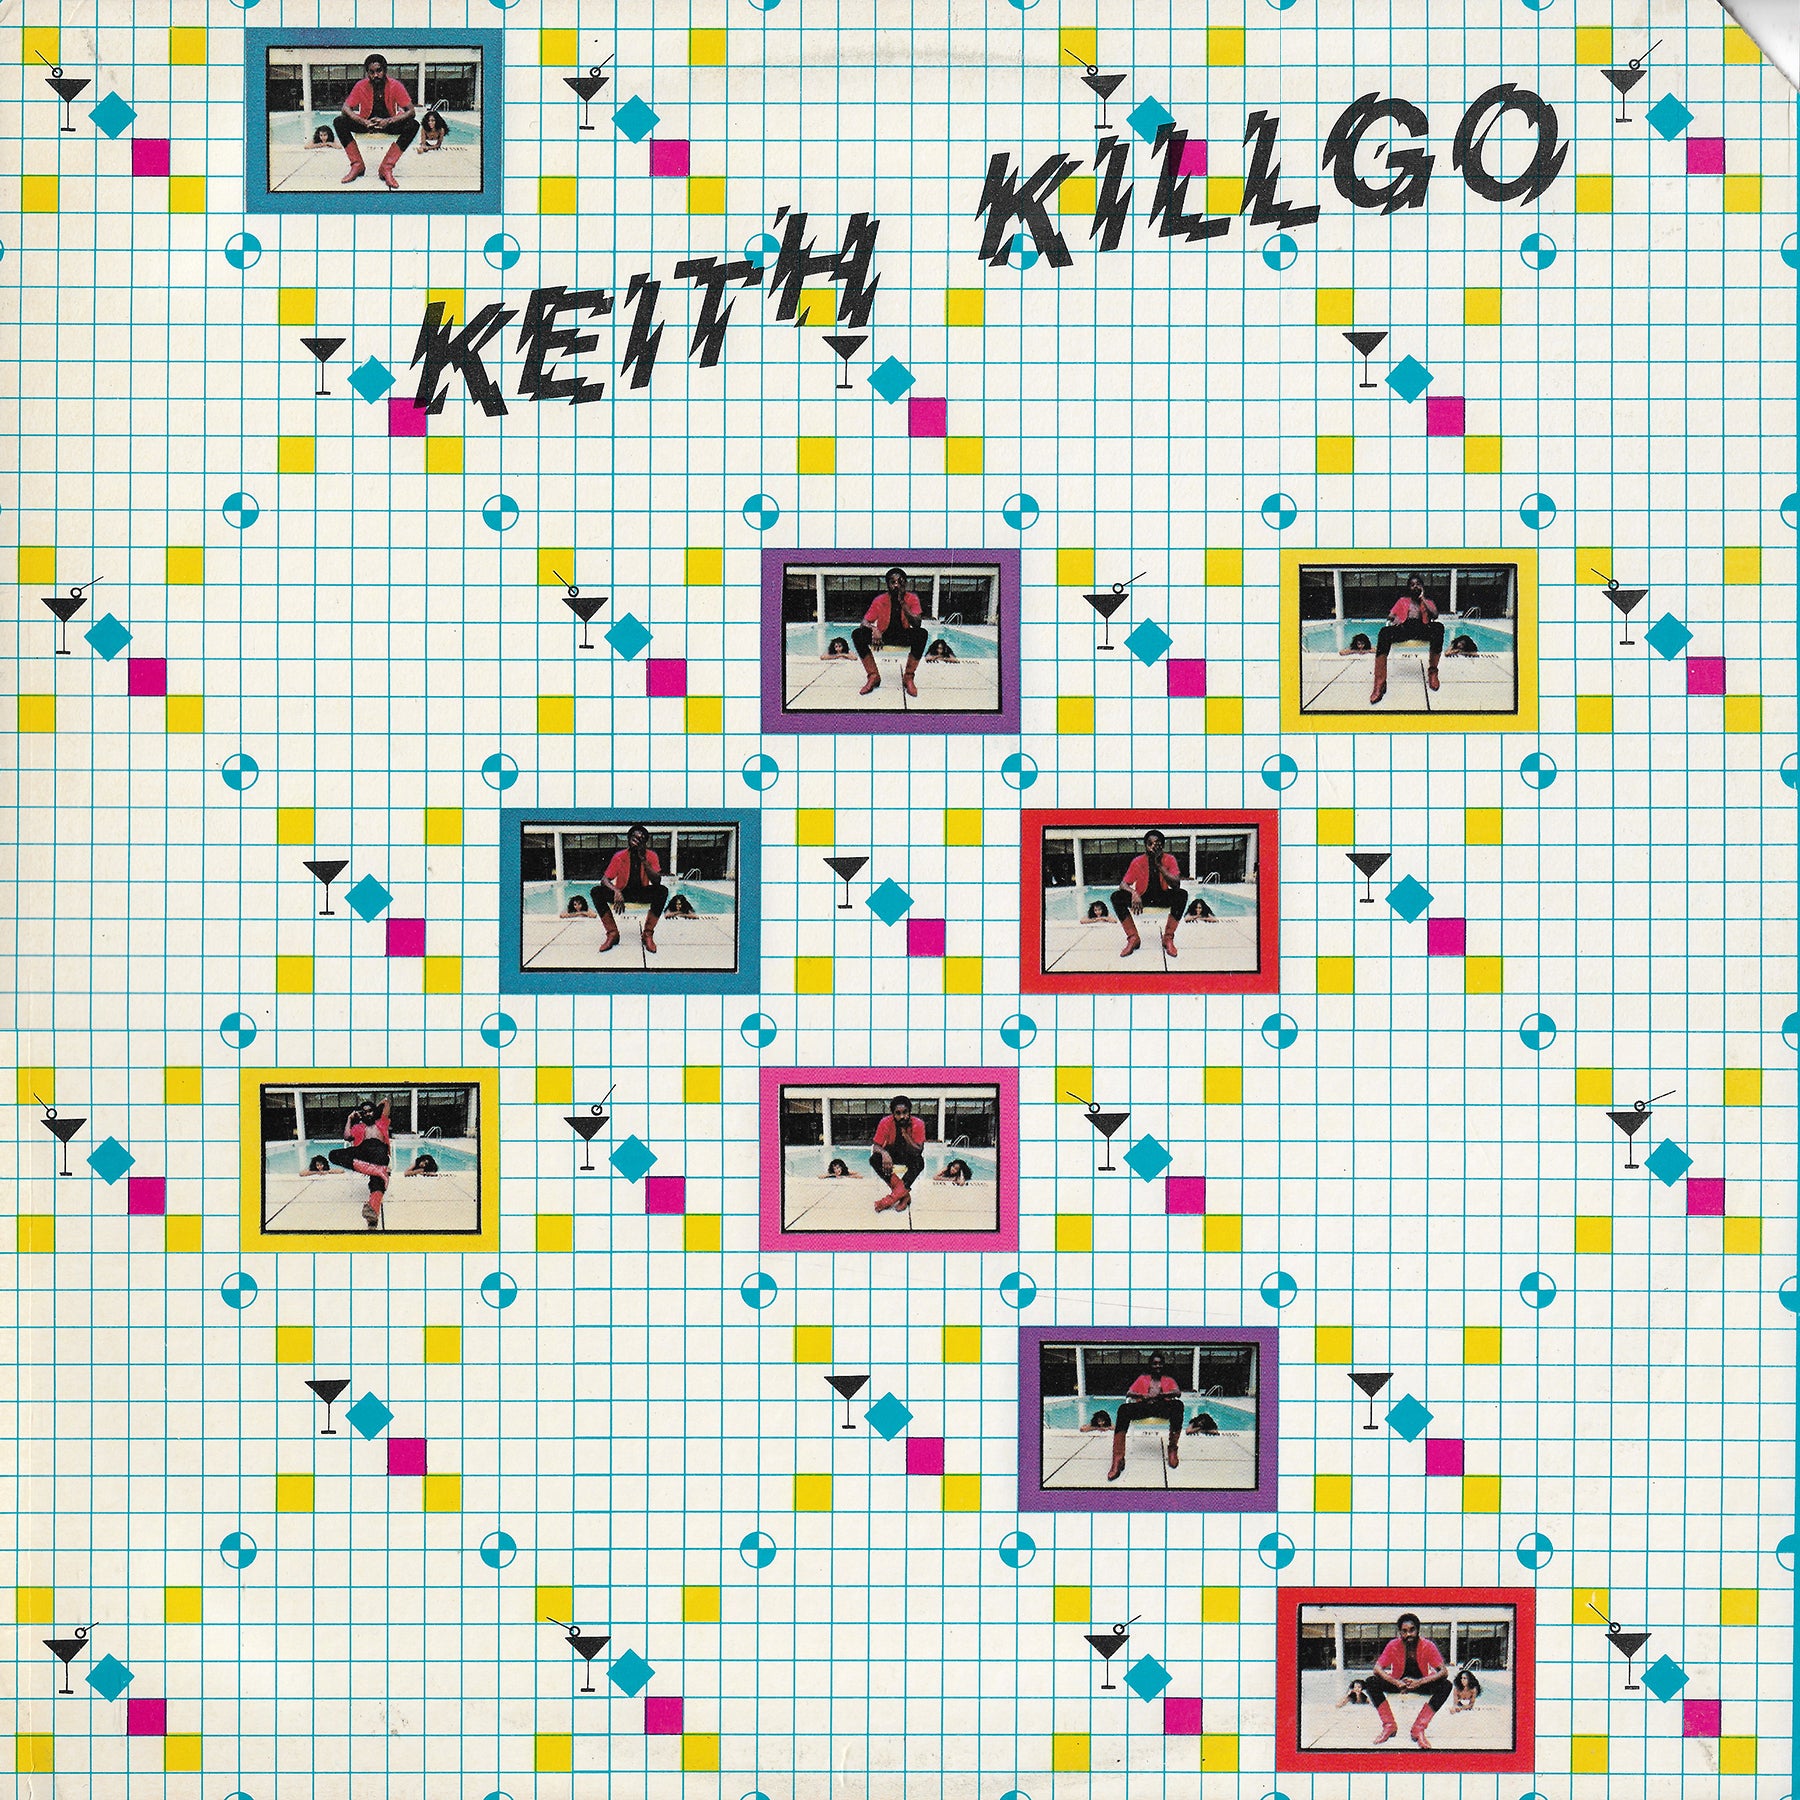 Keith Killgo - Keith Killgo